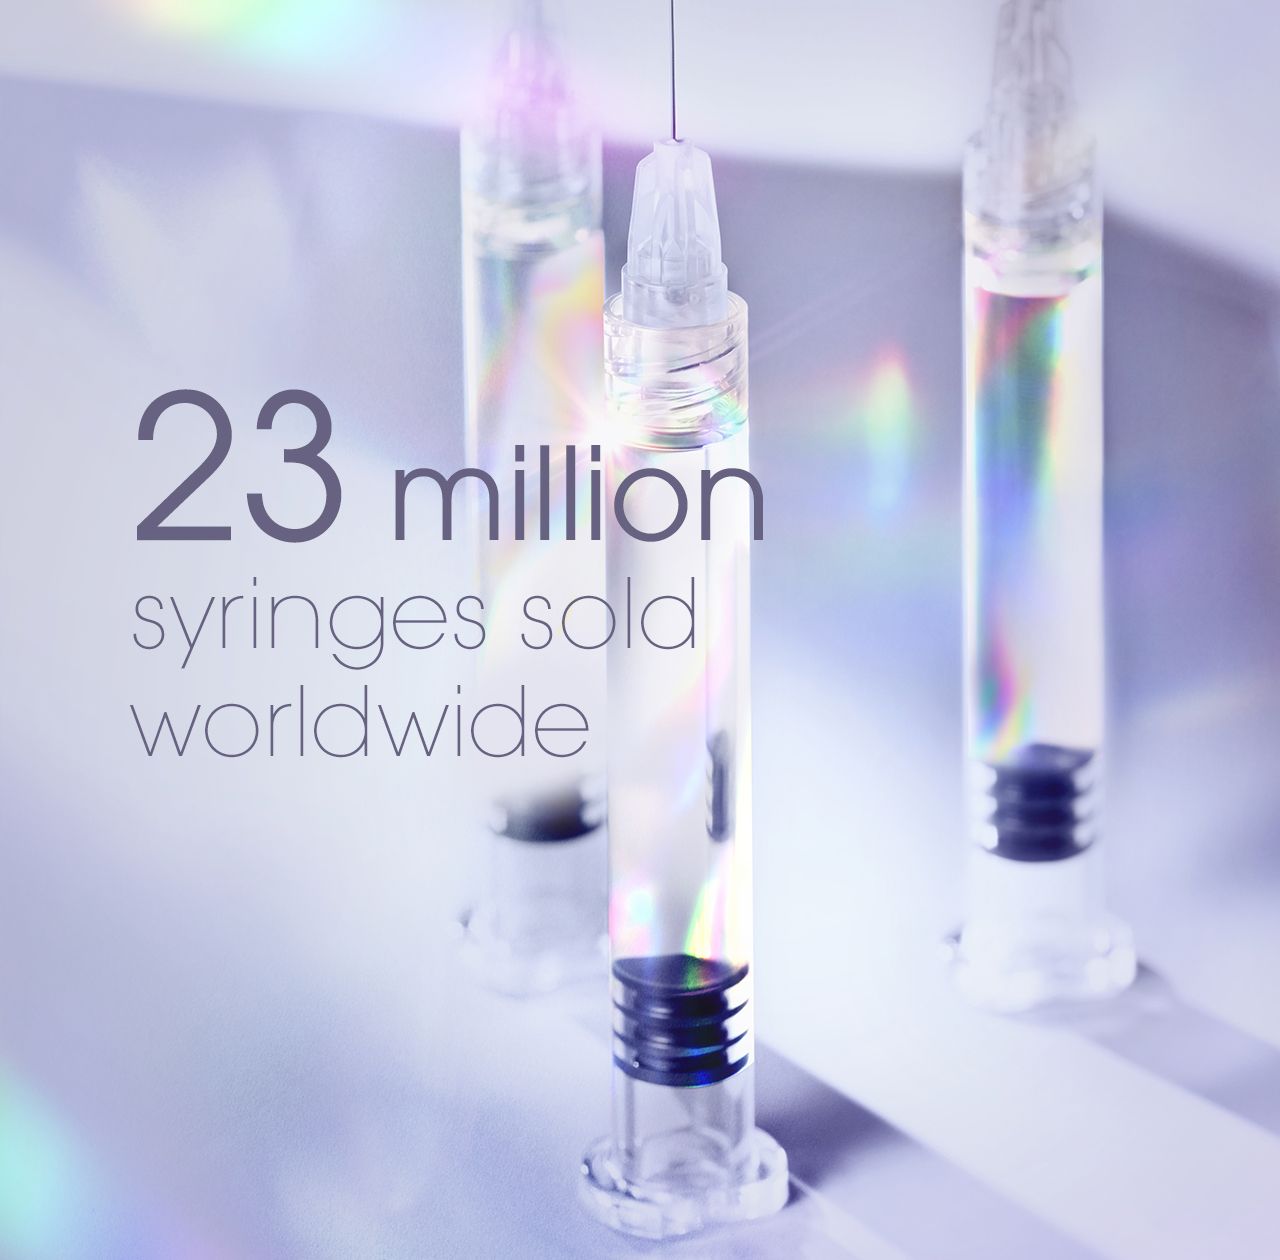 Teoxane - 23 million syringes sold worldwide.